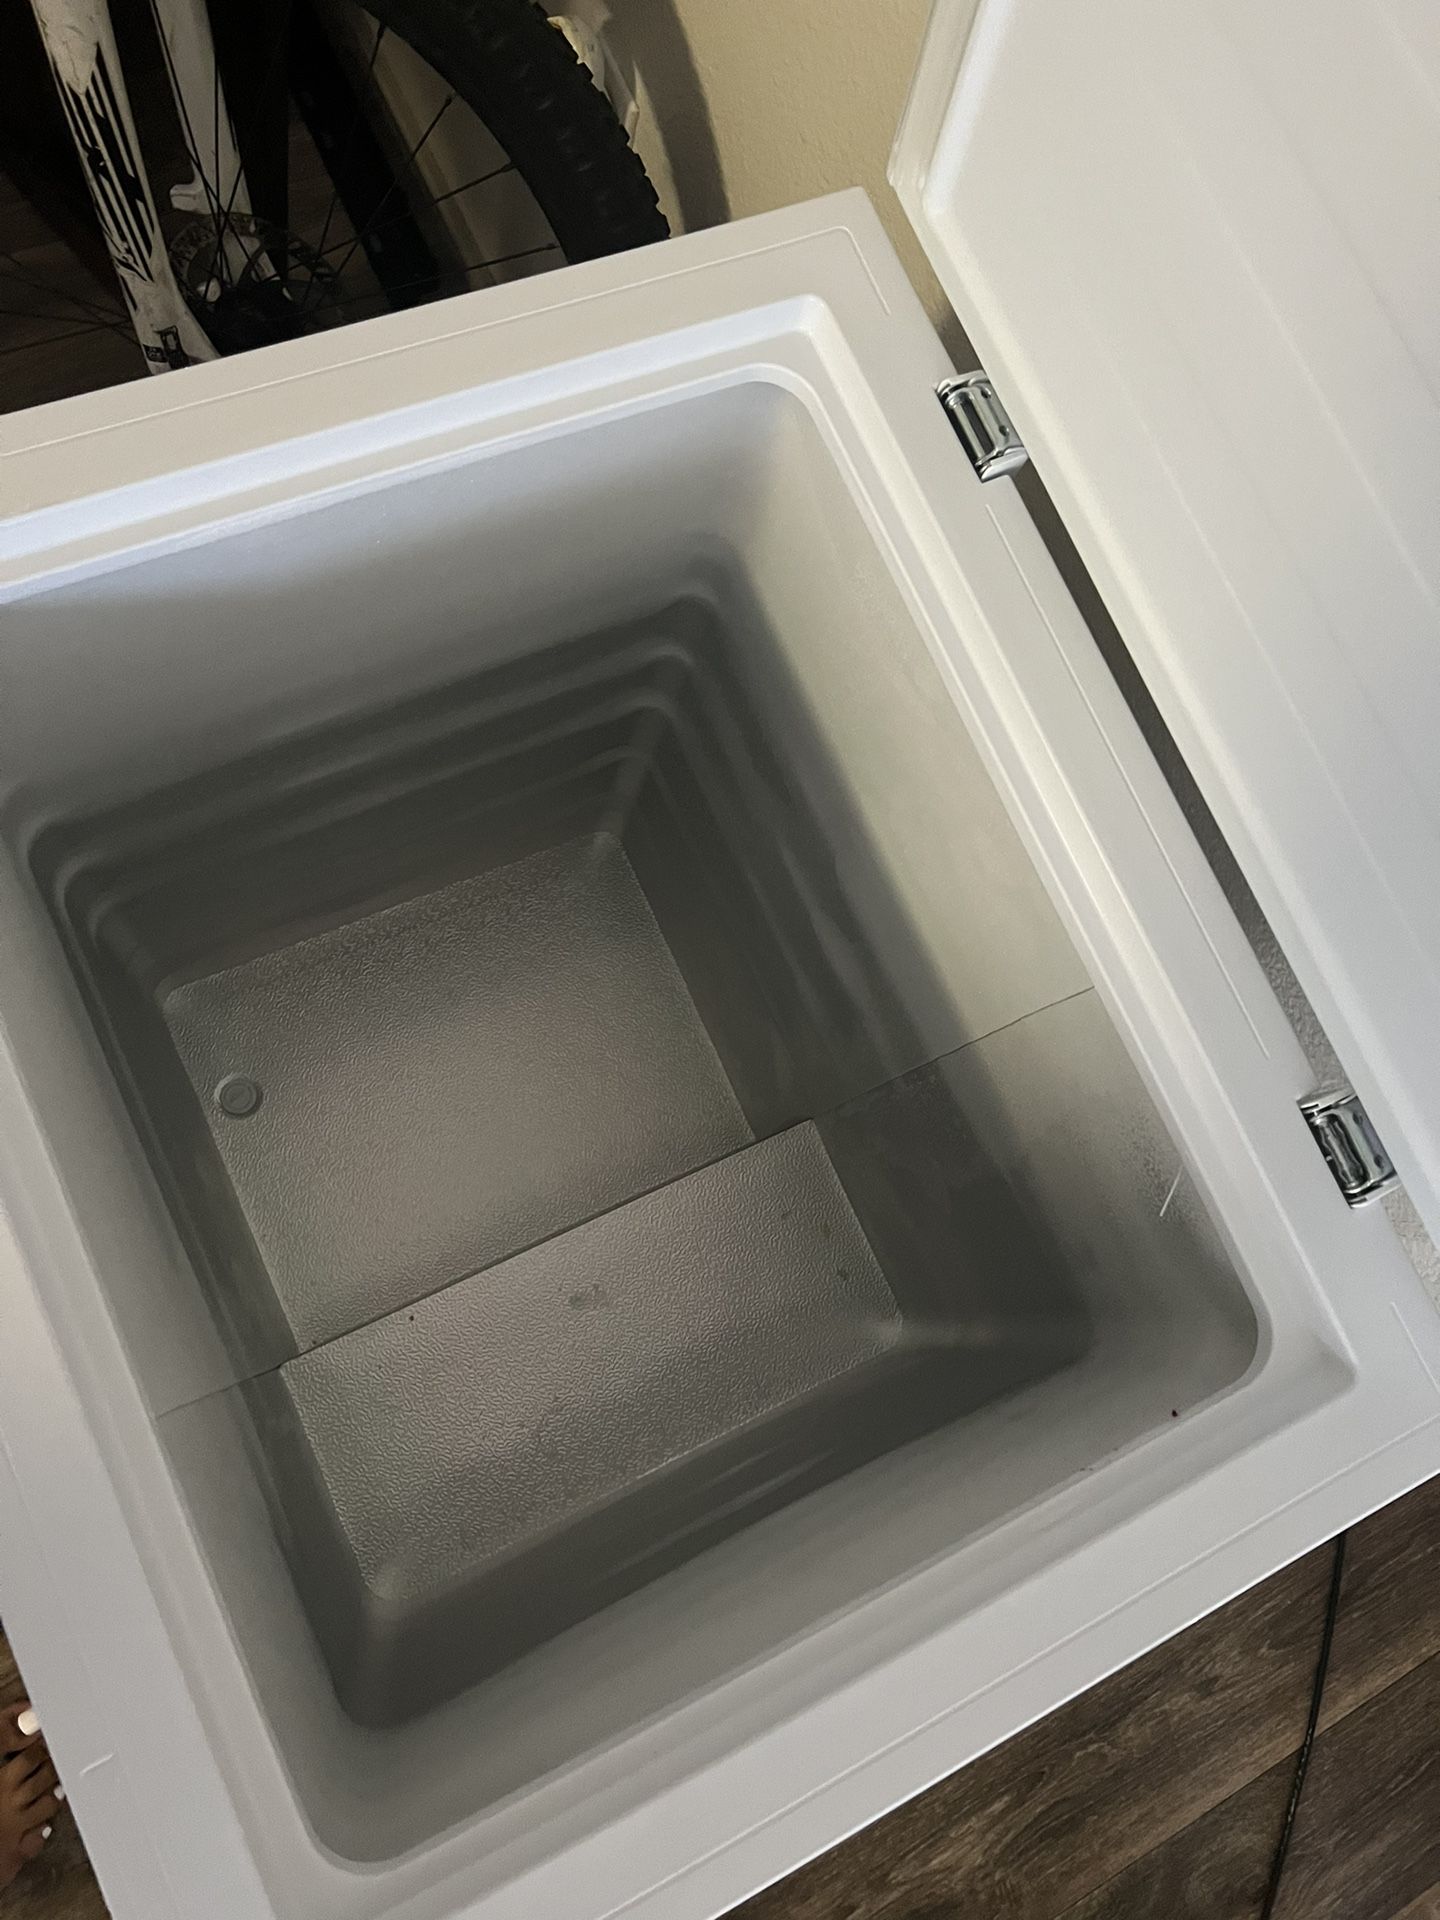 Deep Freezer 3.5 Cubic Feet for Sale in Mesa, AZ - OfferUp